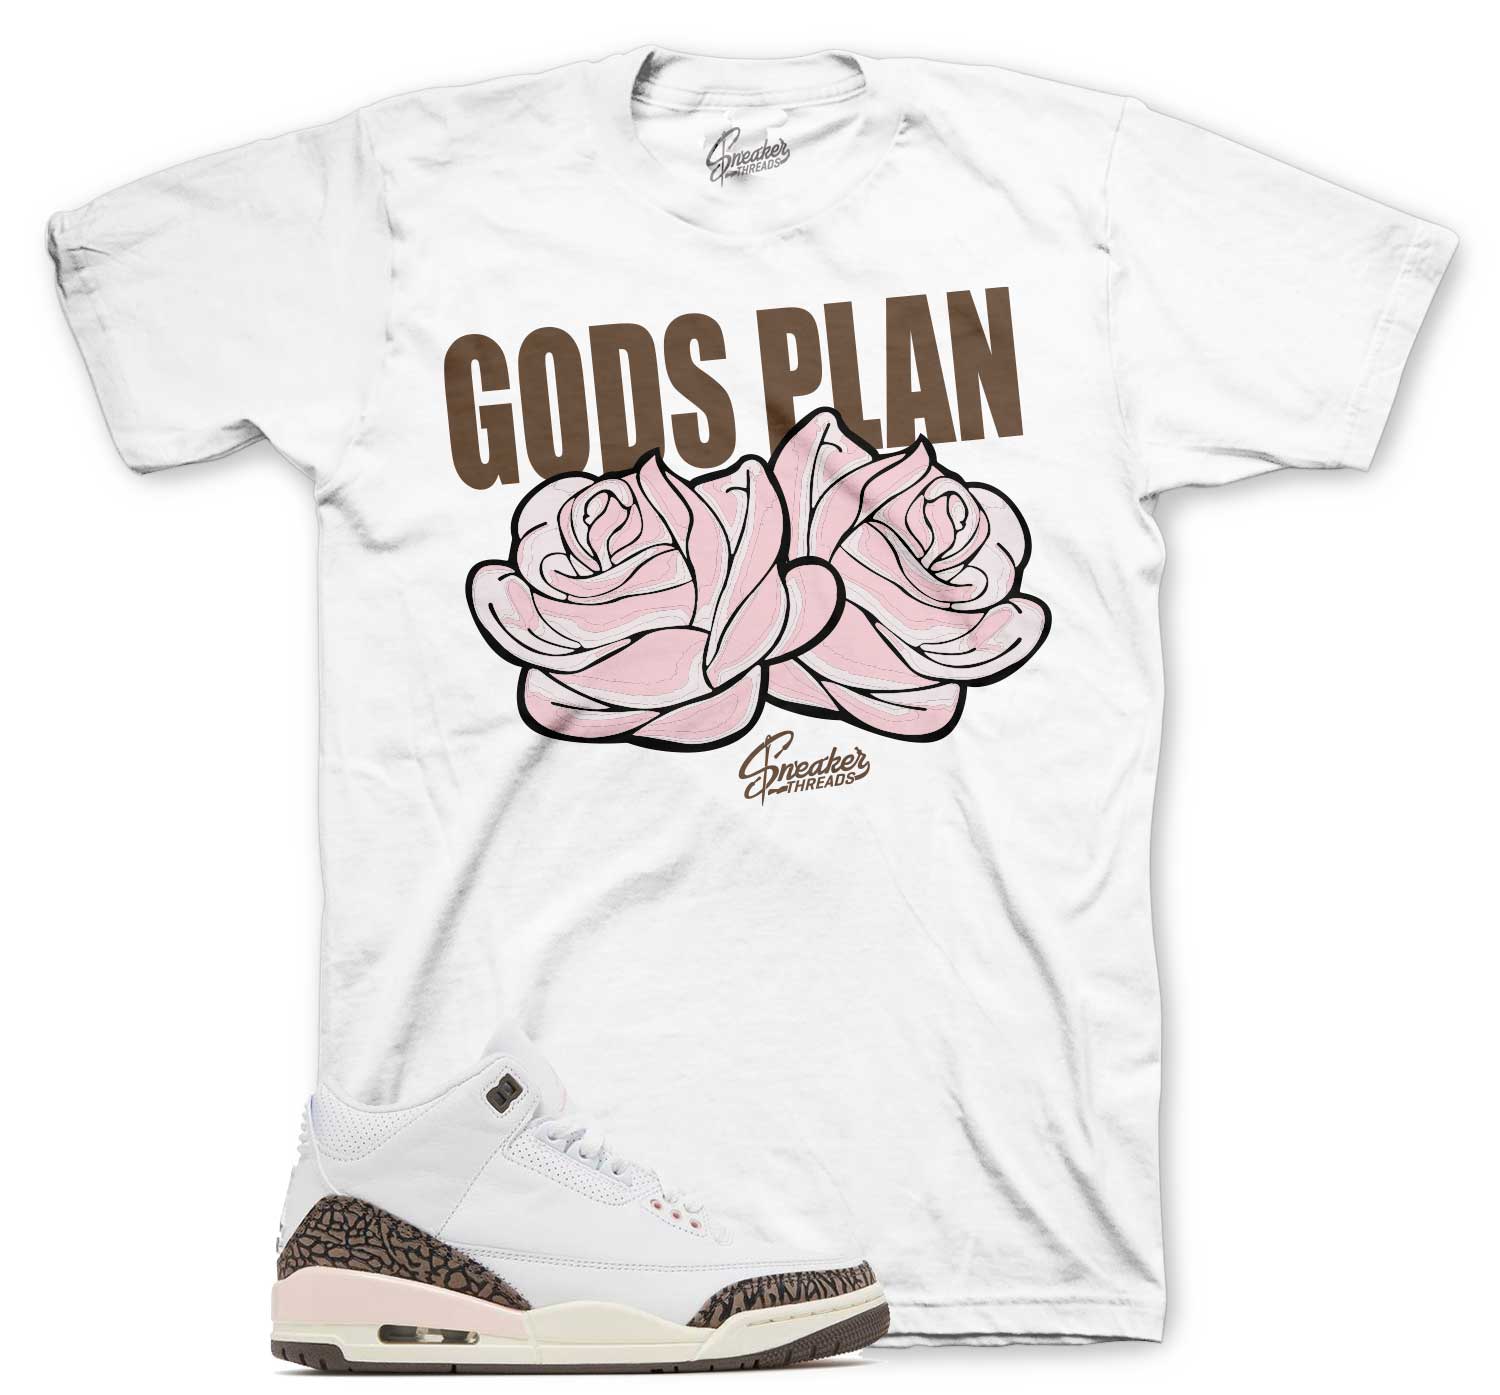 Retro 3 Neapolitan Shirt - Gods Plan - White